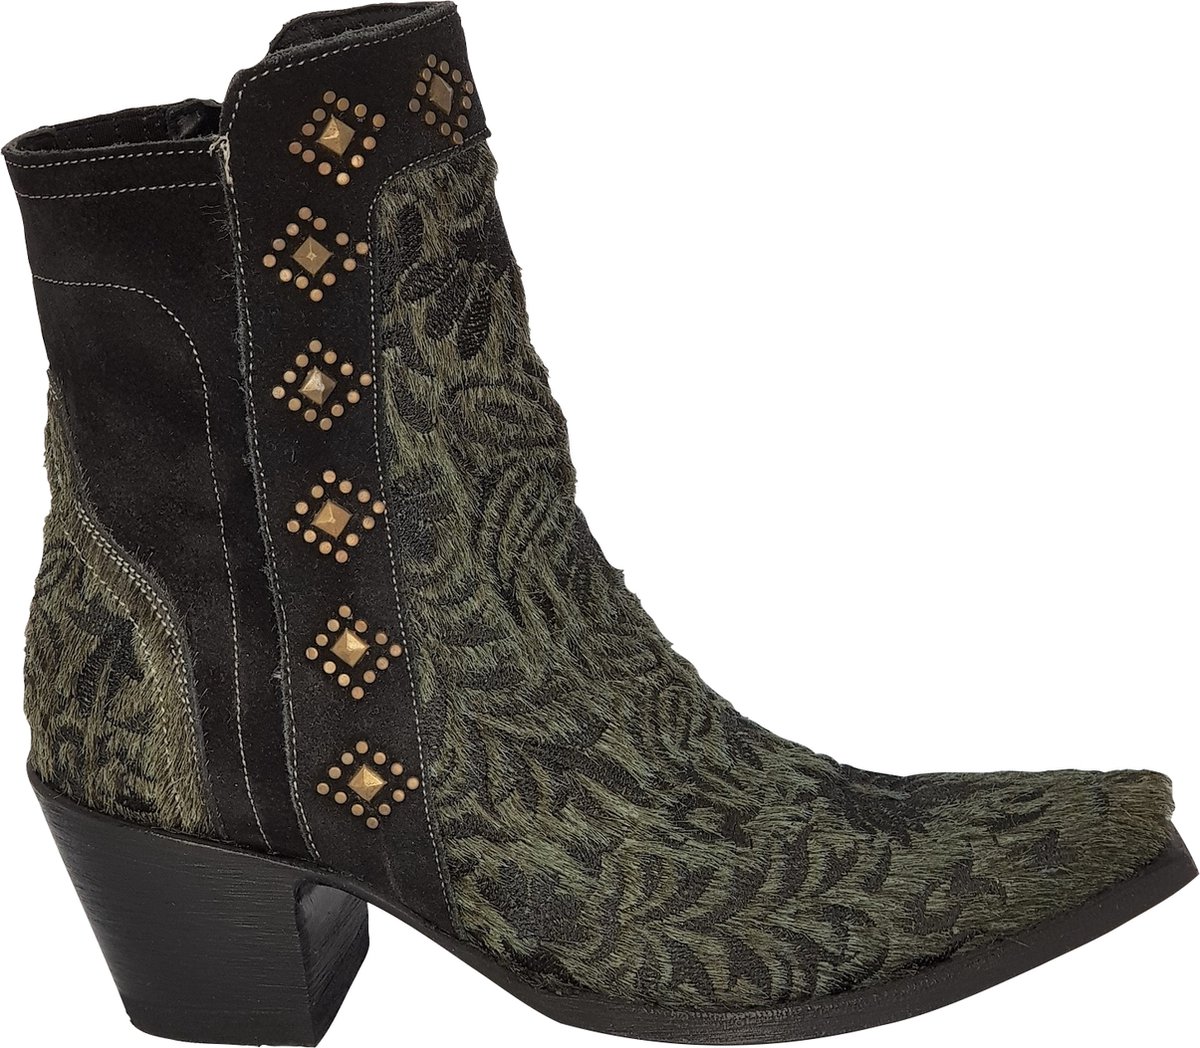 Cowboy laarzen dames Old Gringo Wink - echt leer met haartjes - groen/zwart - studs - spitse neus - maat 37